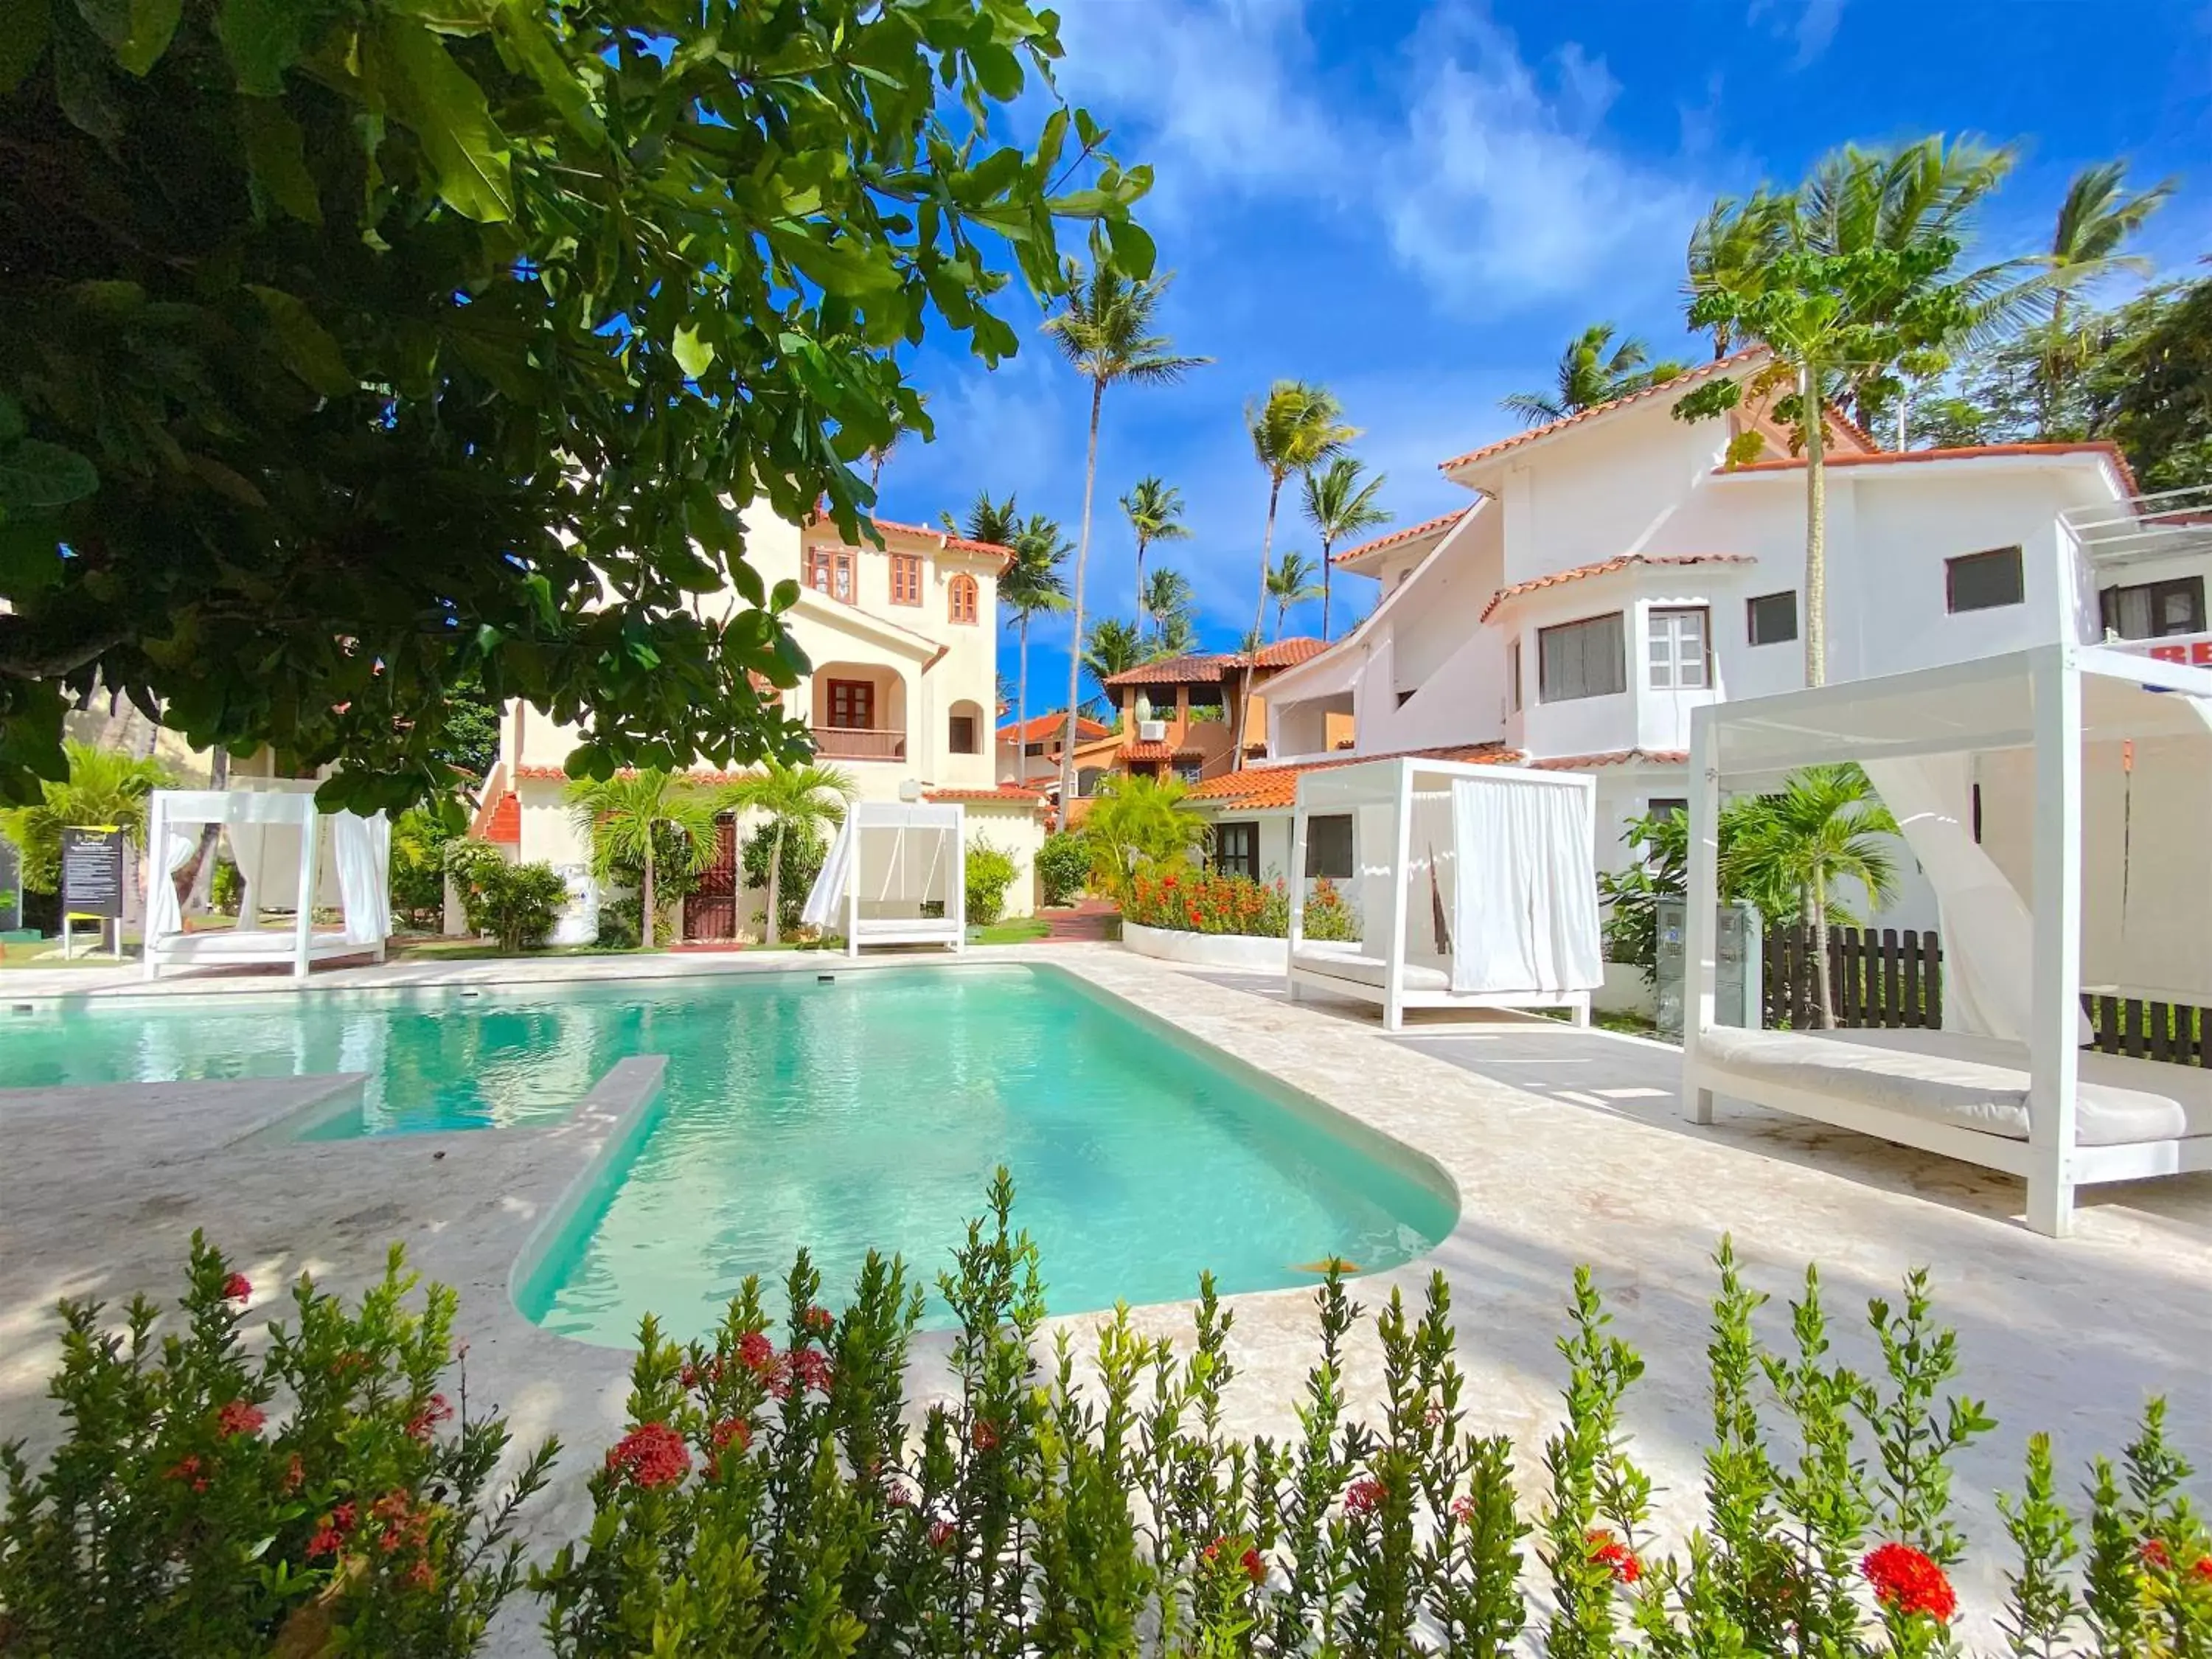 Villa with Garden View in LOS CORALES VILLAS and SUITES - BEACH CLUB, SPA, RESTAURANTS